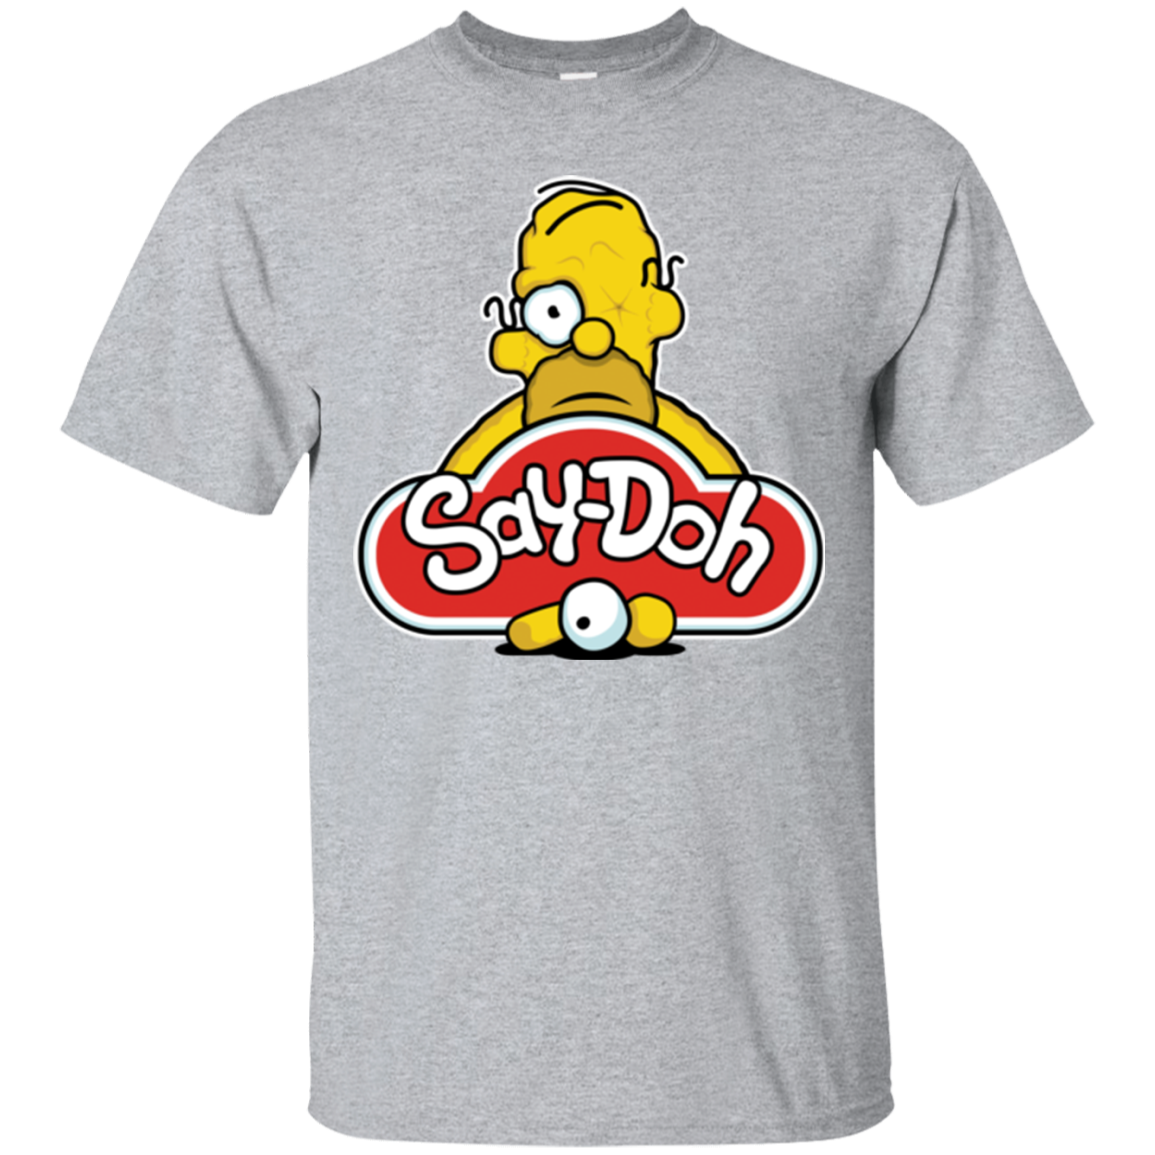 Saydoh T-Shirt